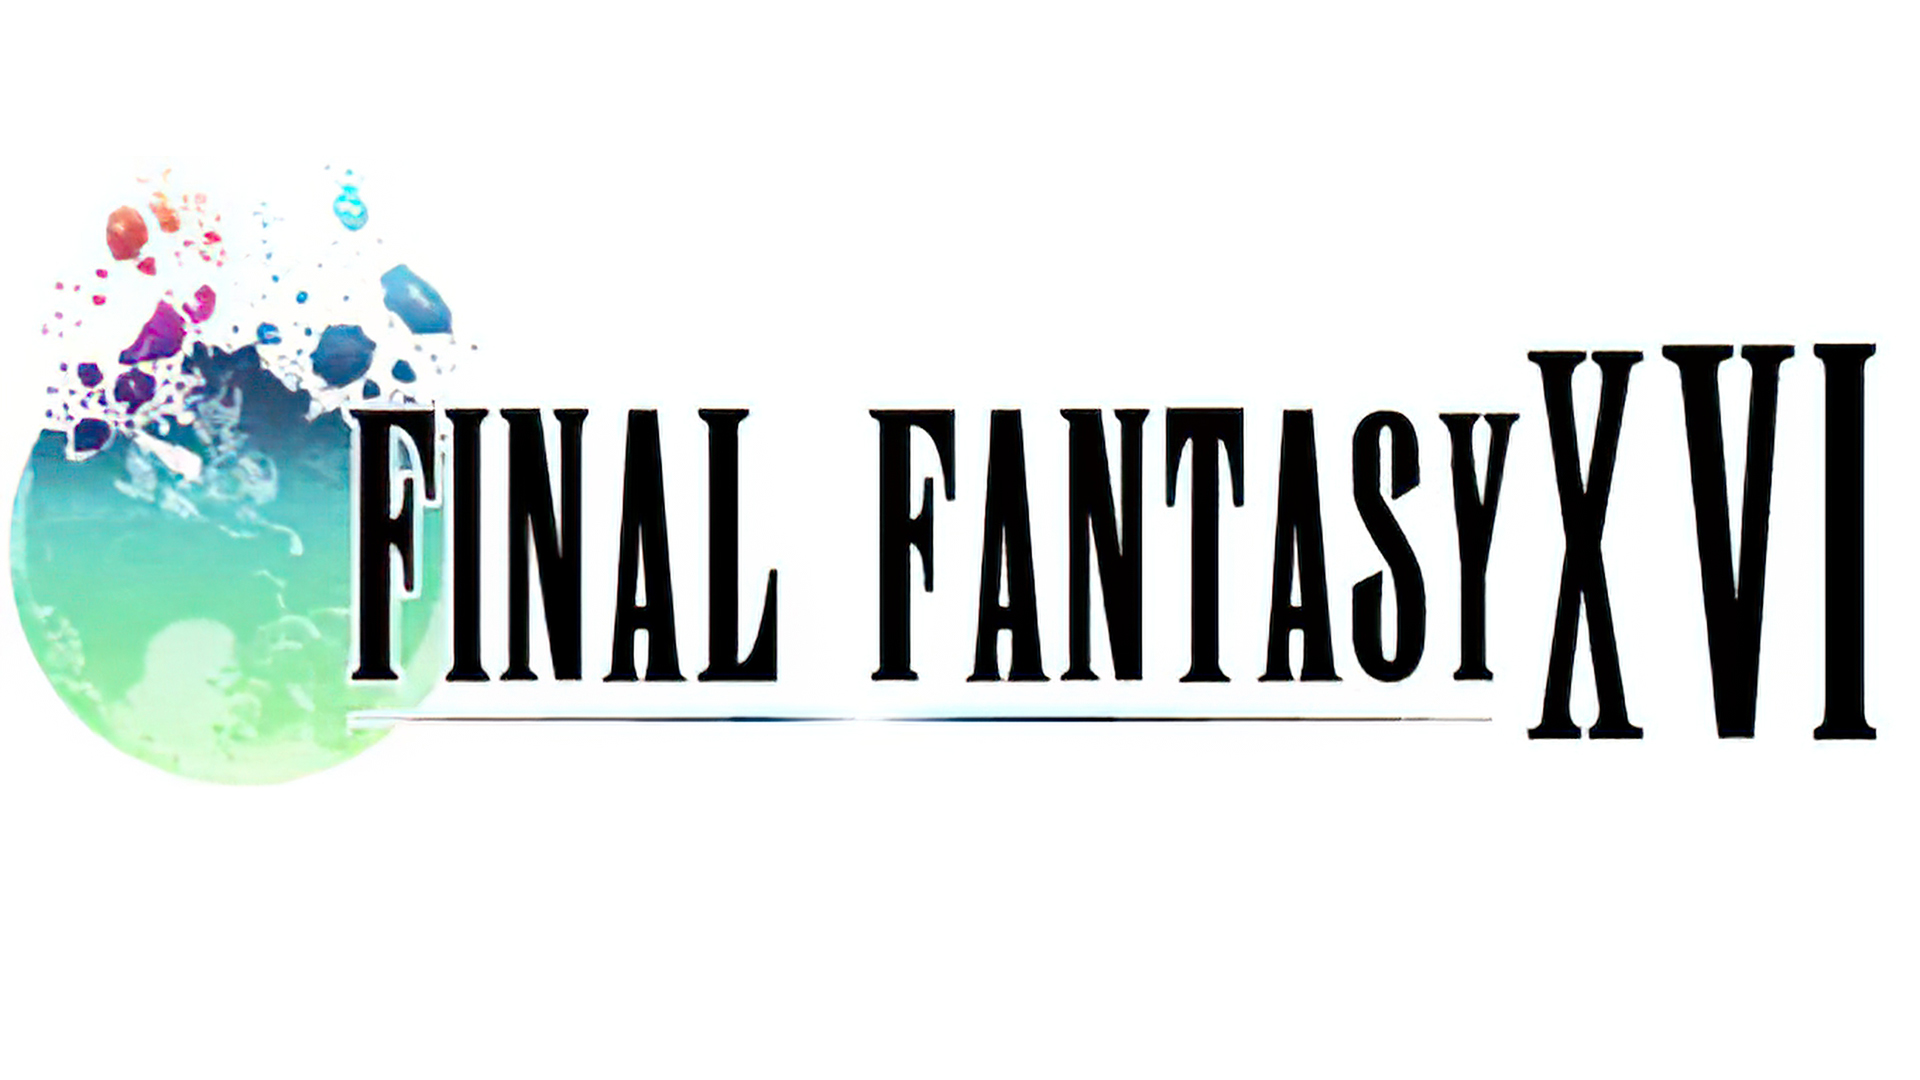 Final Fantasy XVI is in development